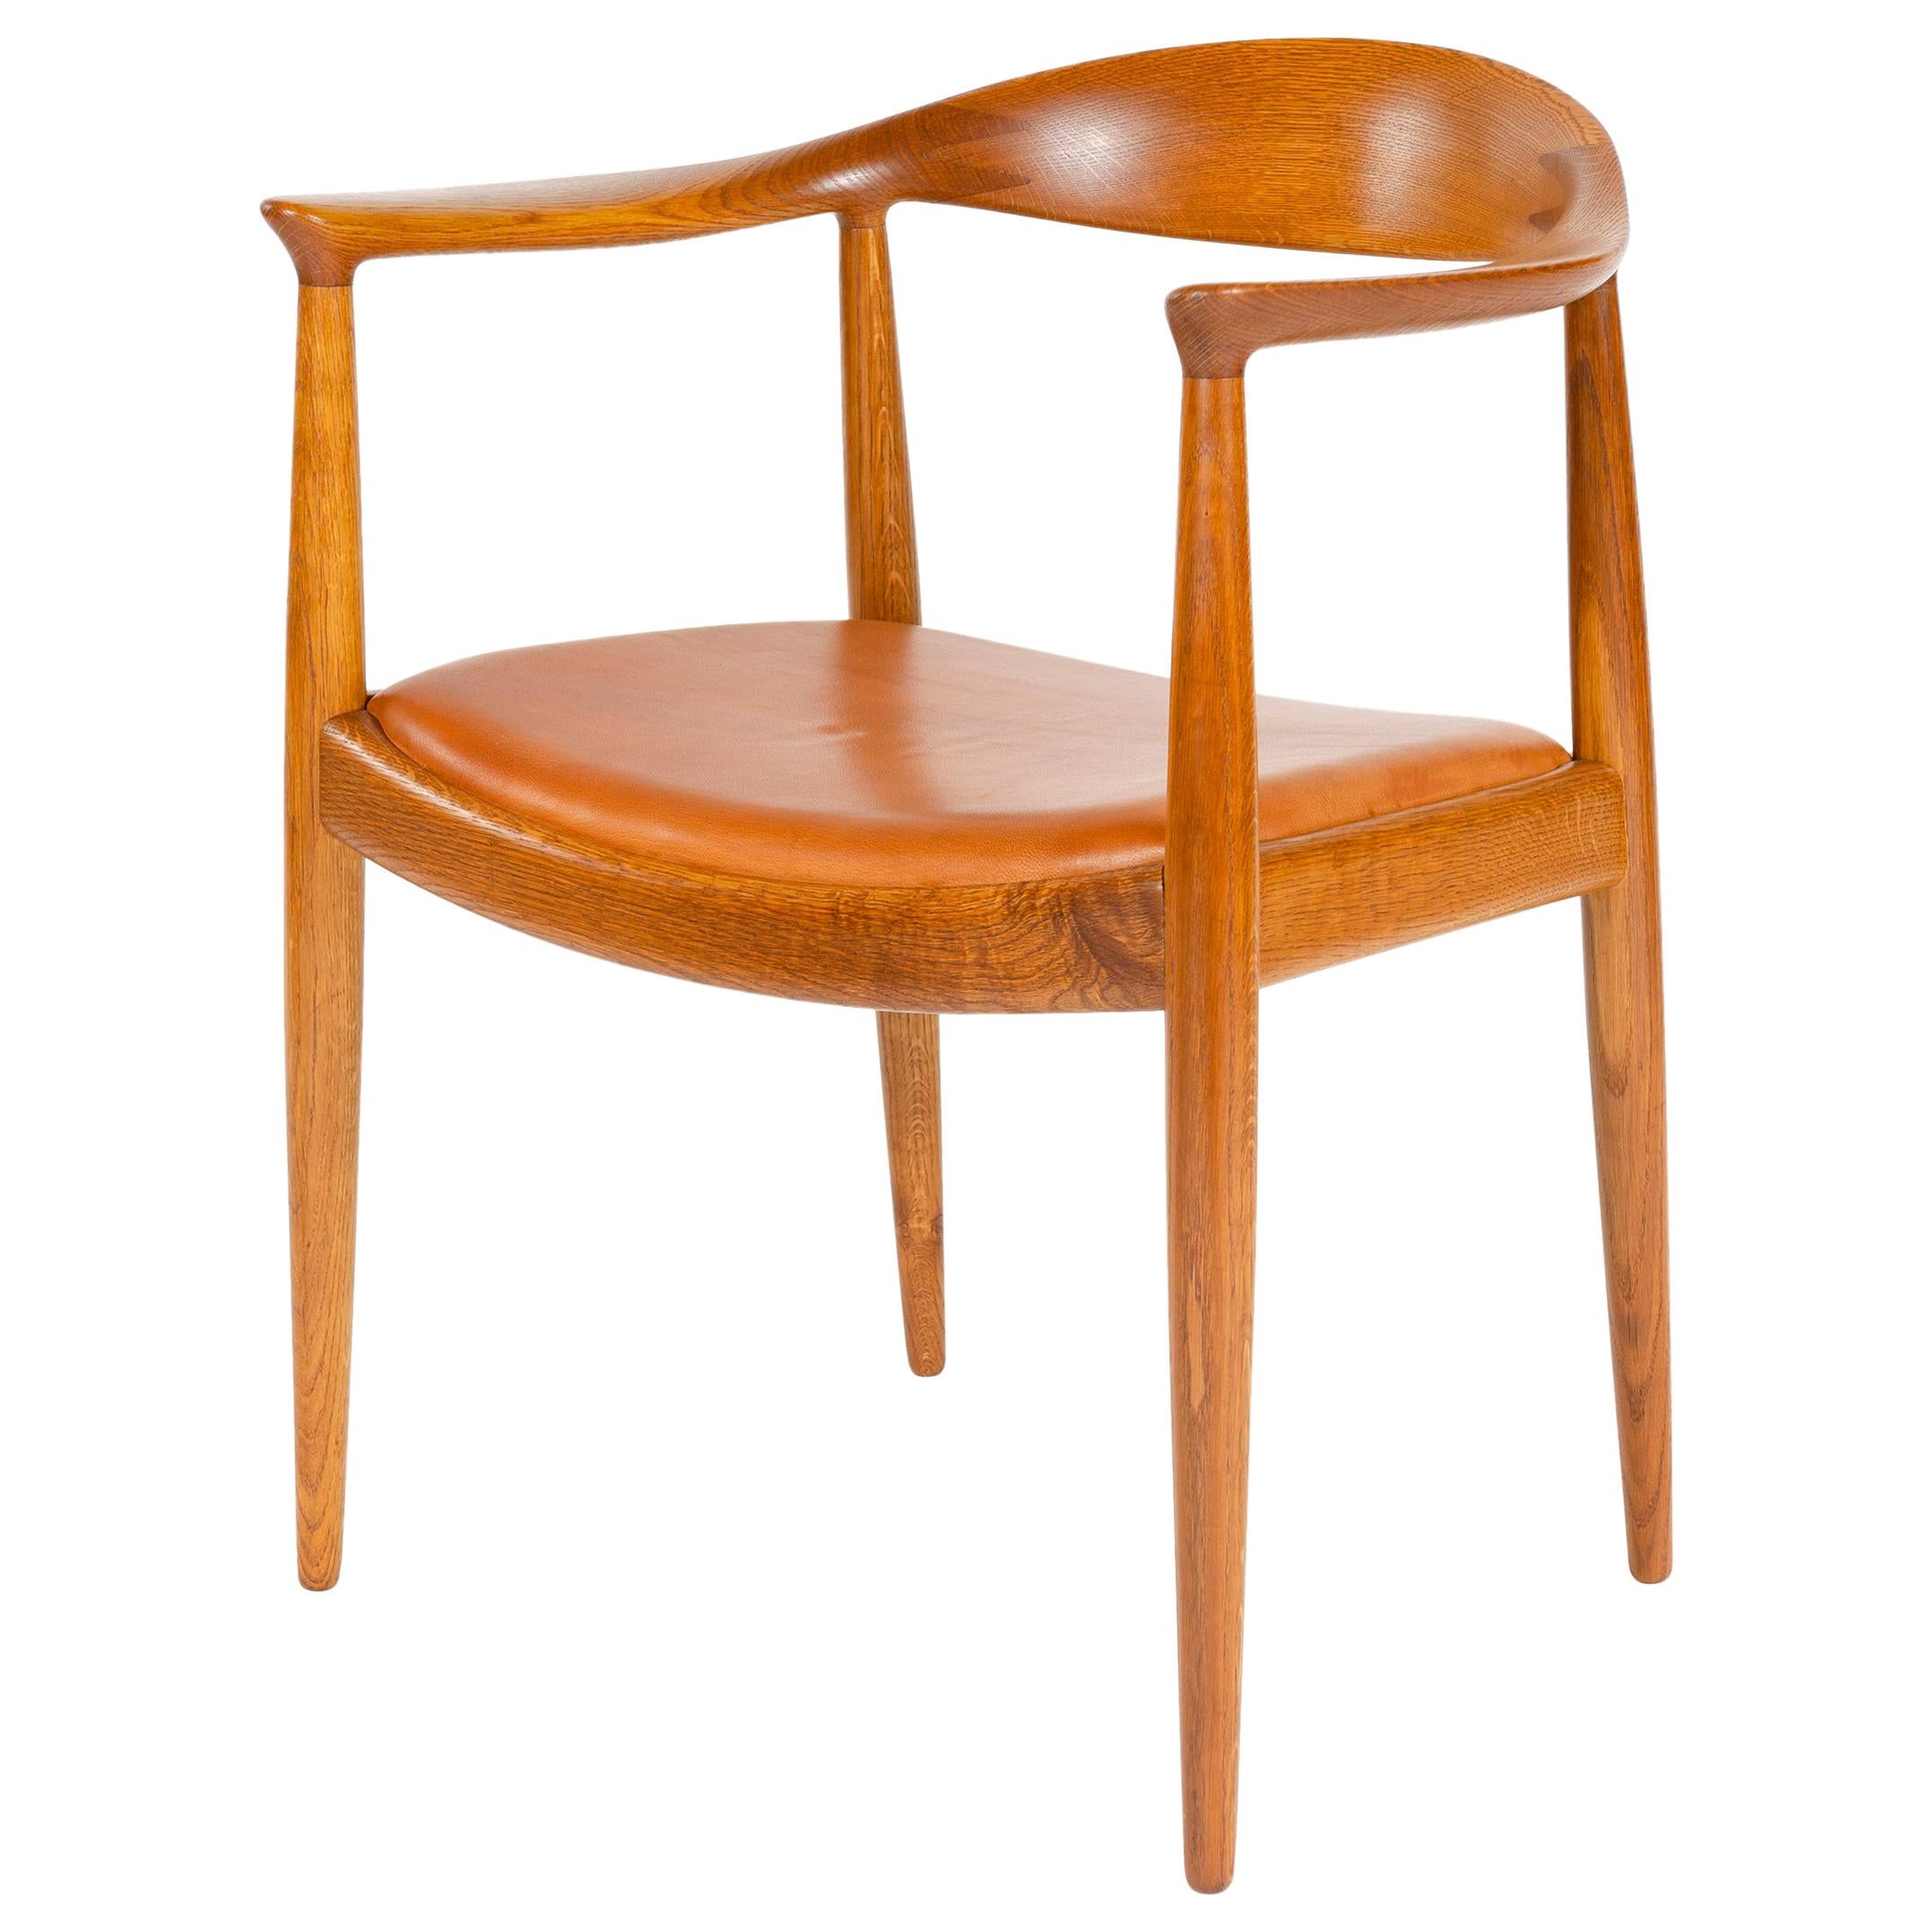 1950s Danish Oak Round Chair by Hans J. Wegner for Johannes Hansen